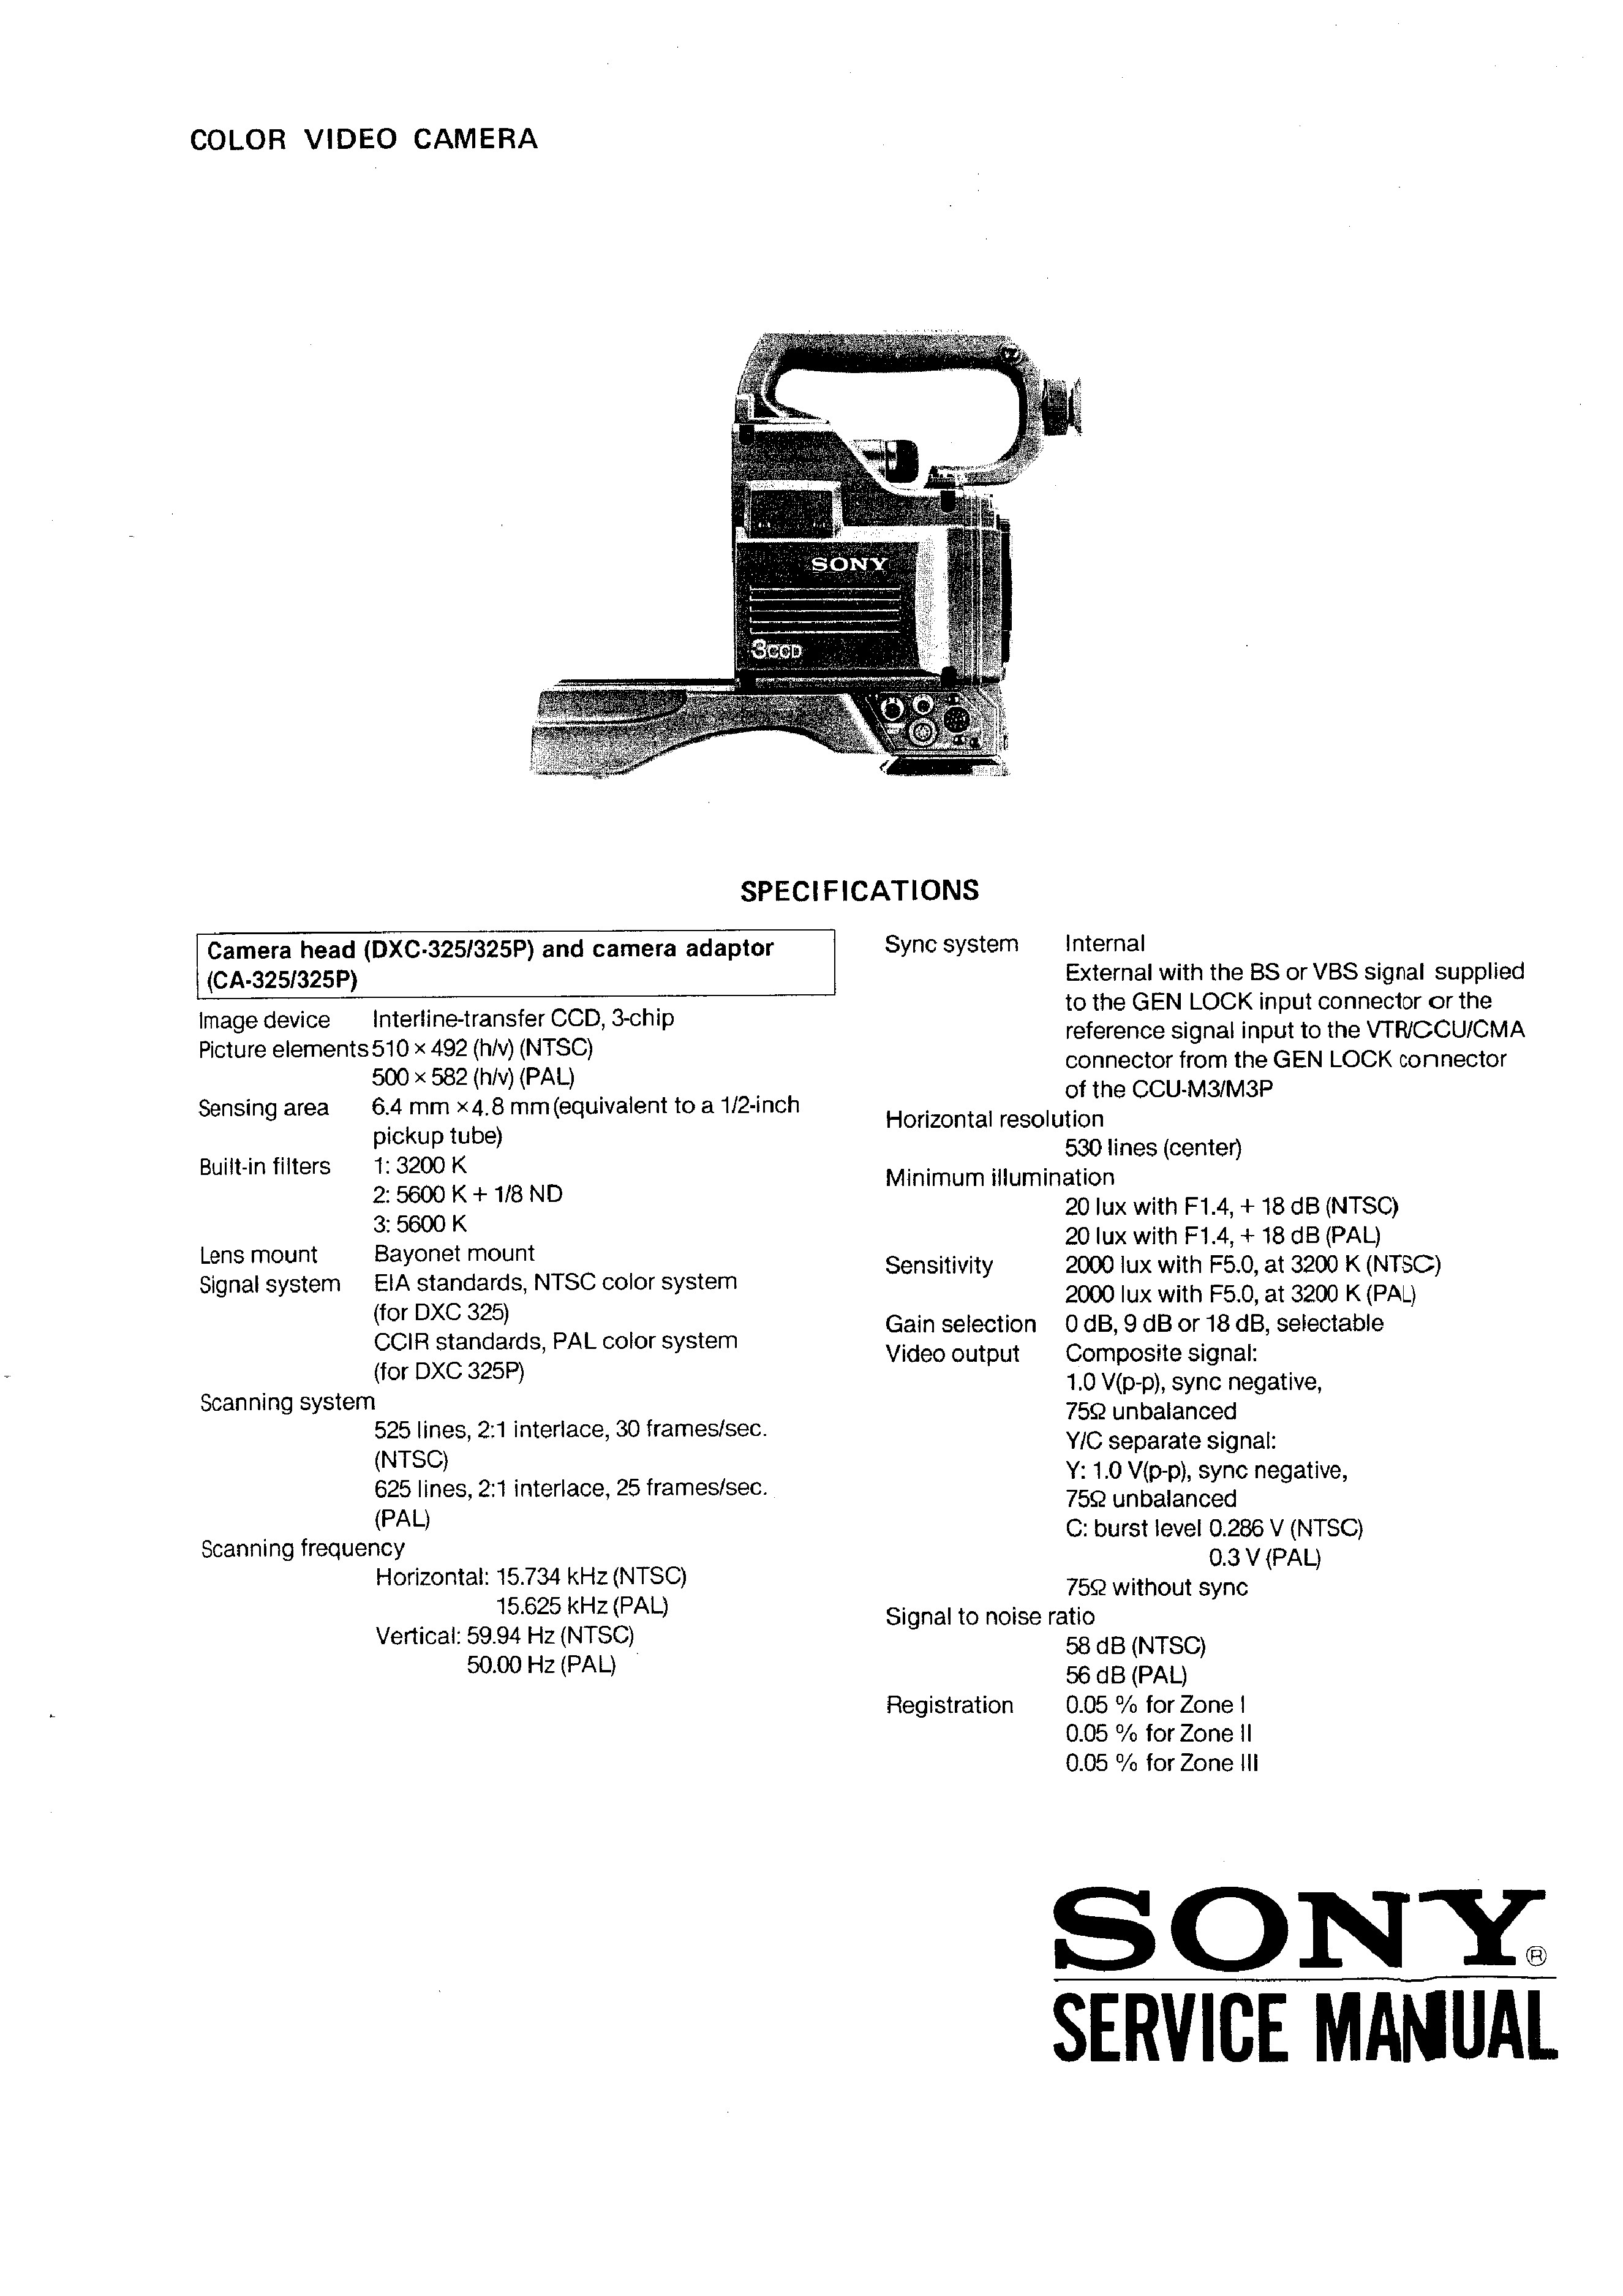 Sony Dxc-325p Volume 2